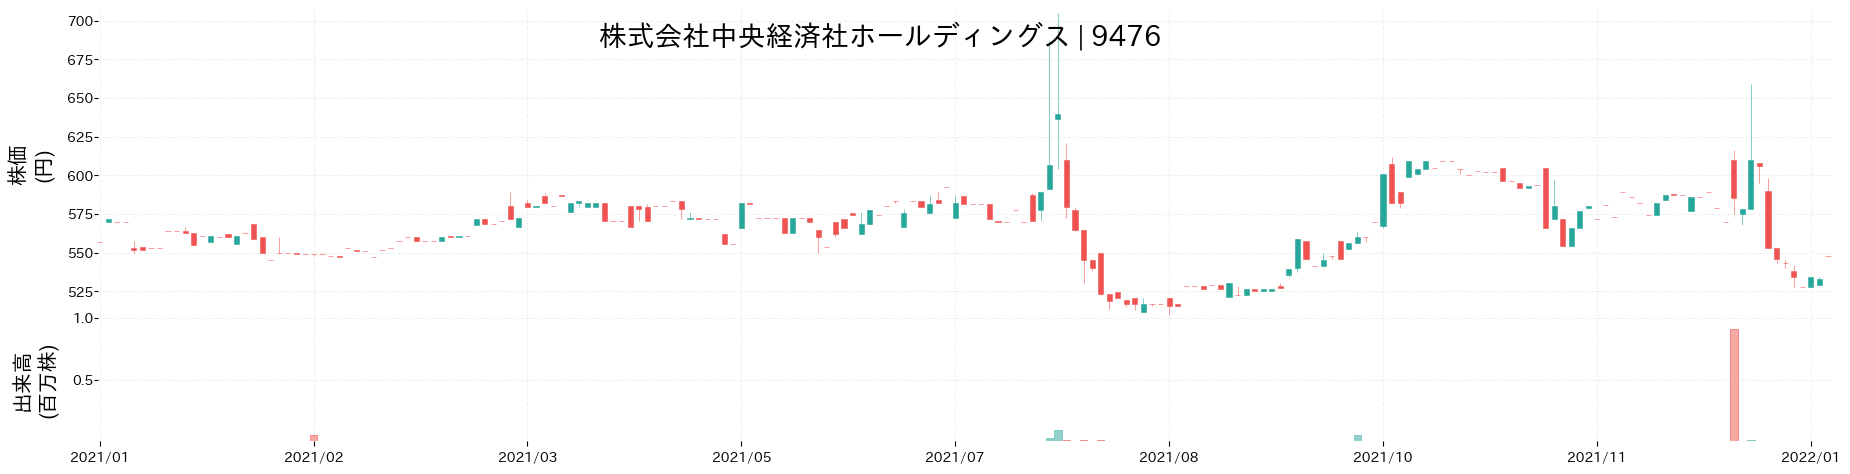 中央経済社ホールディングスの株価推移(2021)